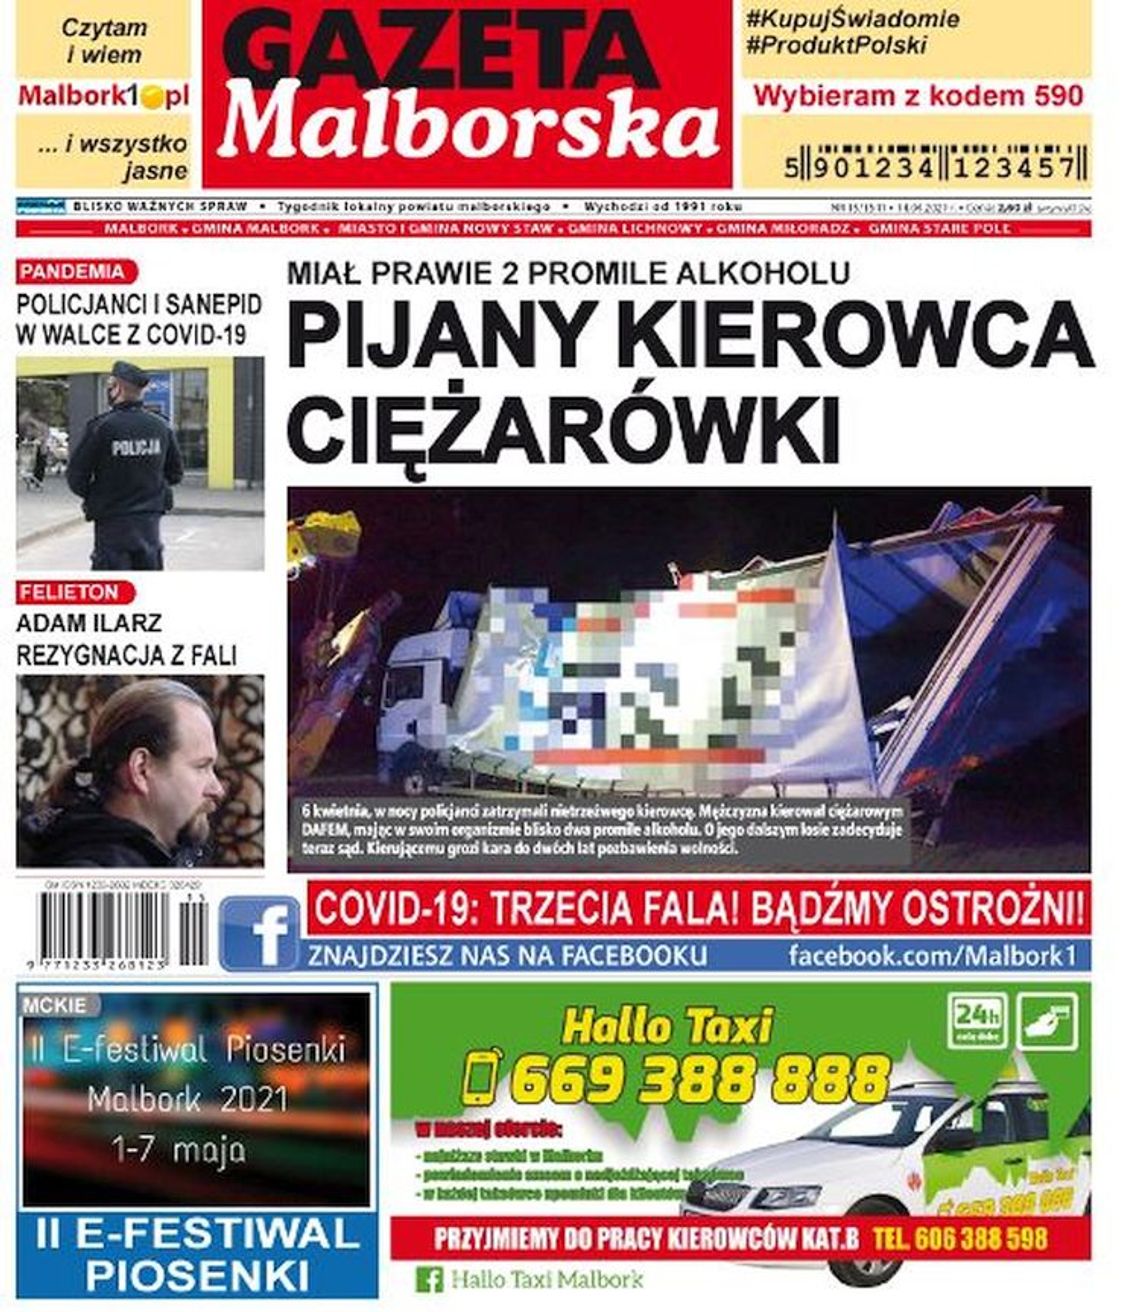 Nowy numer Gazety Malborskiej już w sprzedaży. Najświeższe informacje z Malborka oraz okolic naszego powiatu już w twoim kiosku. Co w środku?